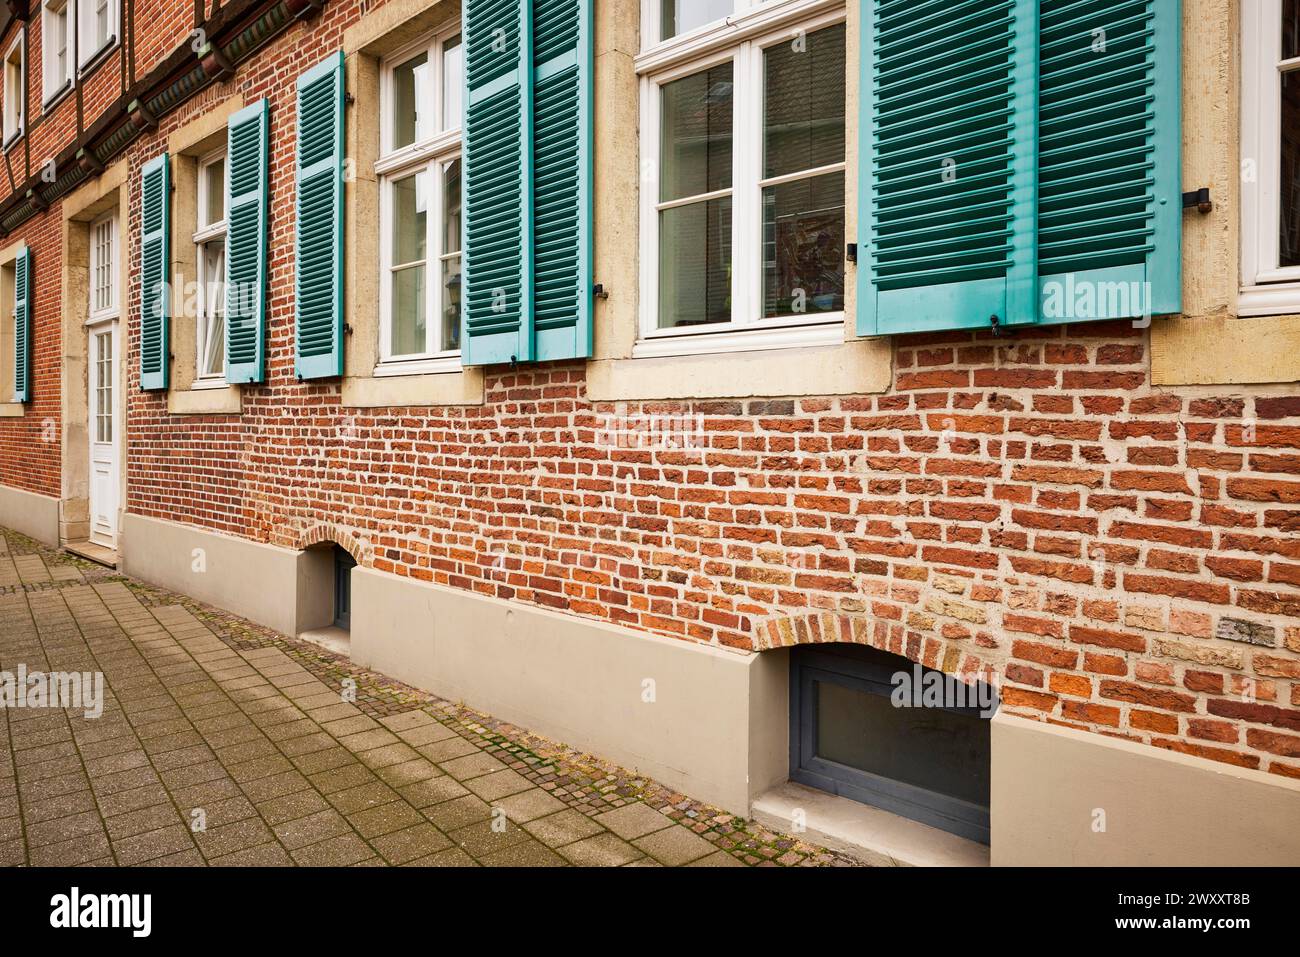 Fenêtres avec volets bleu-vert sur une maison en brique à Warendorf, quartier de Warendorf, Rhénanie du Nord-Westphalie, Allemagne Banque D'Images